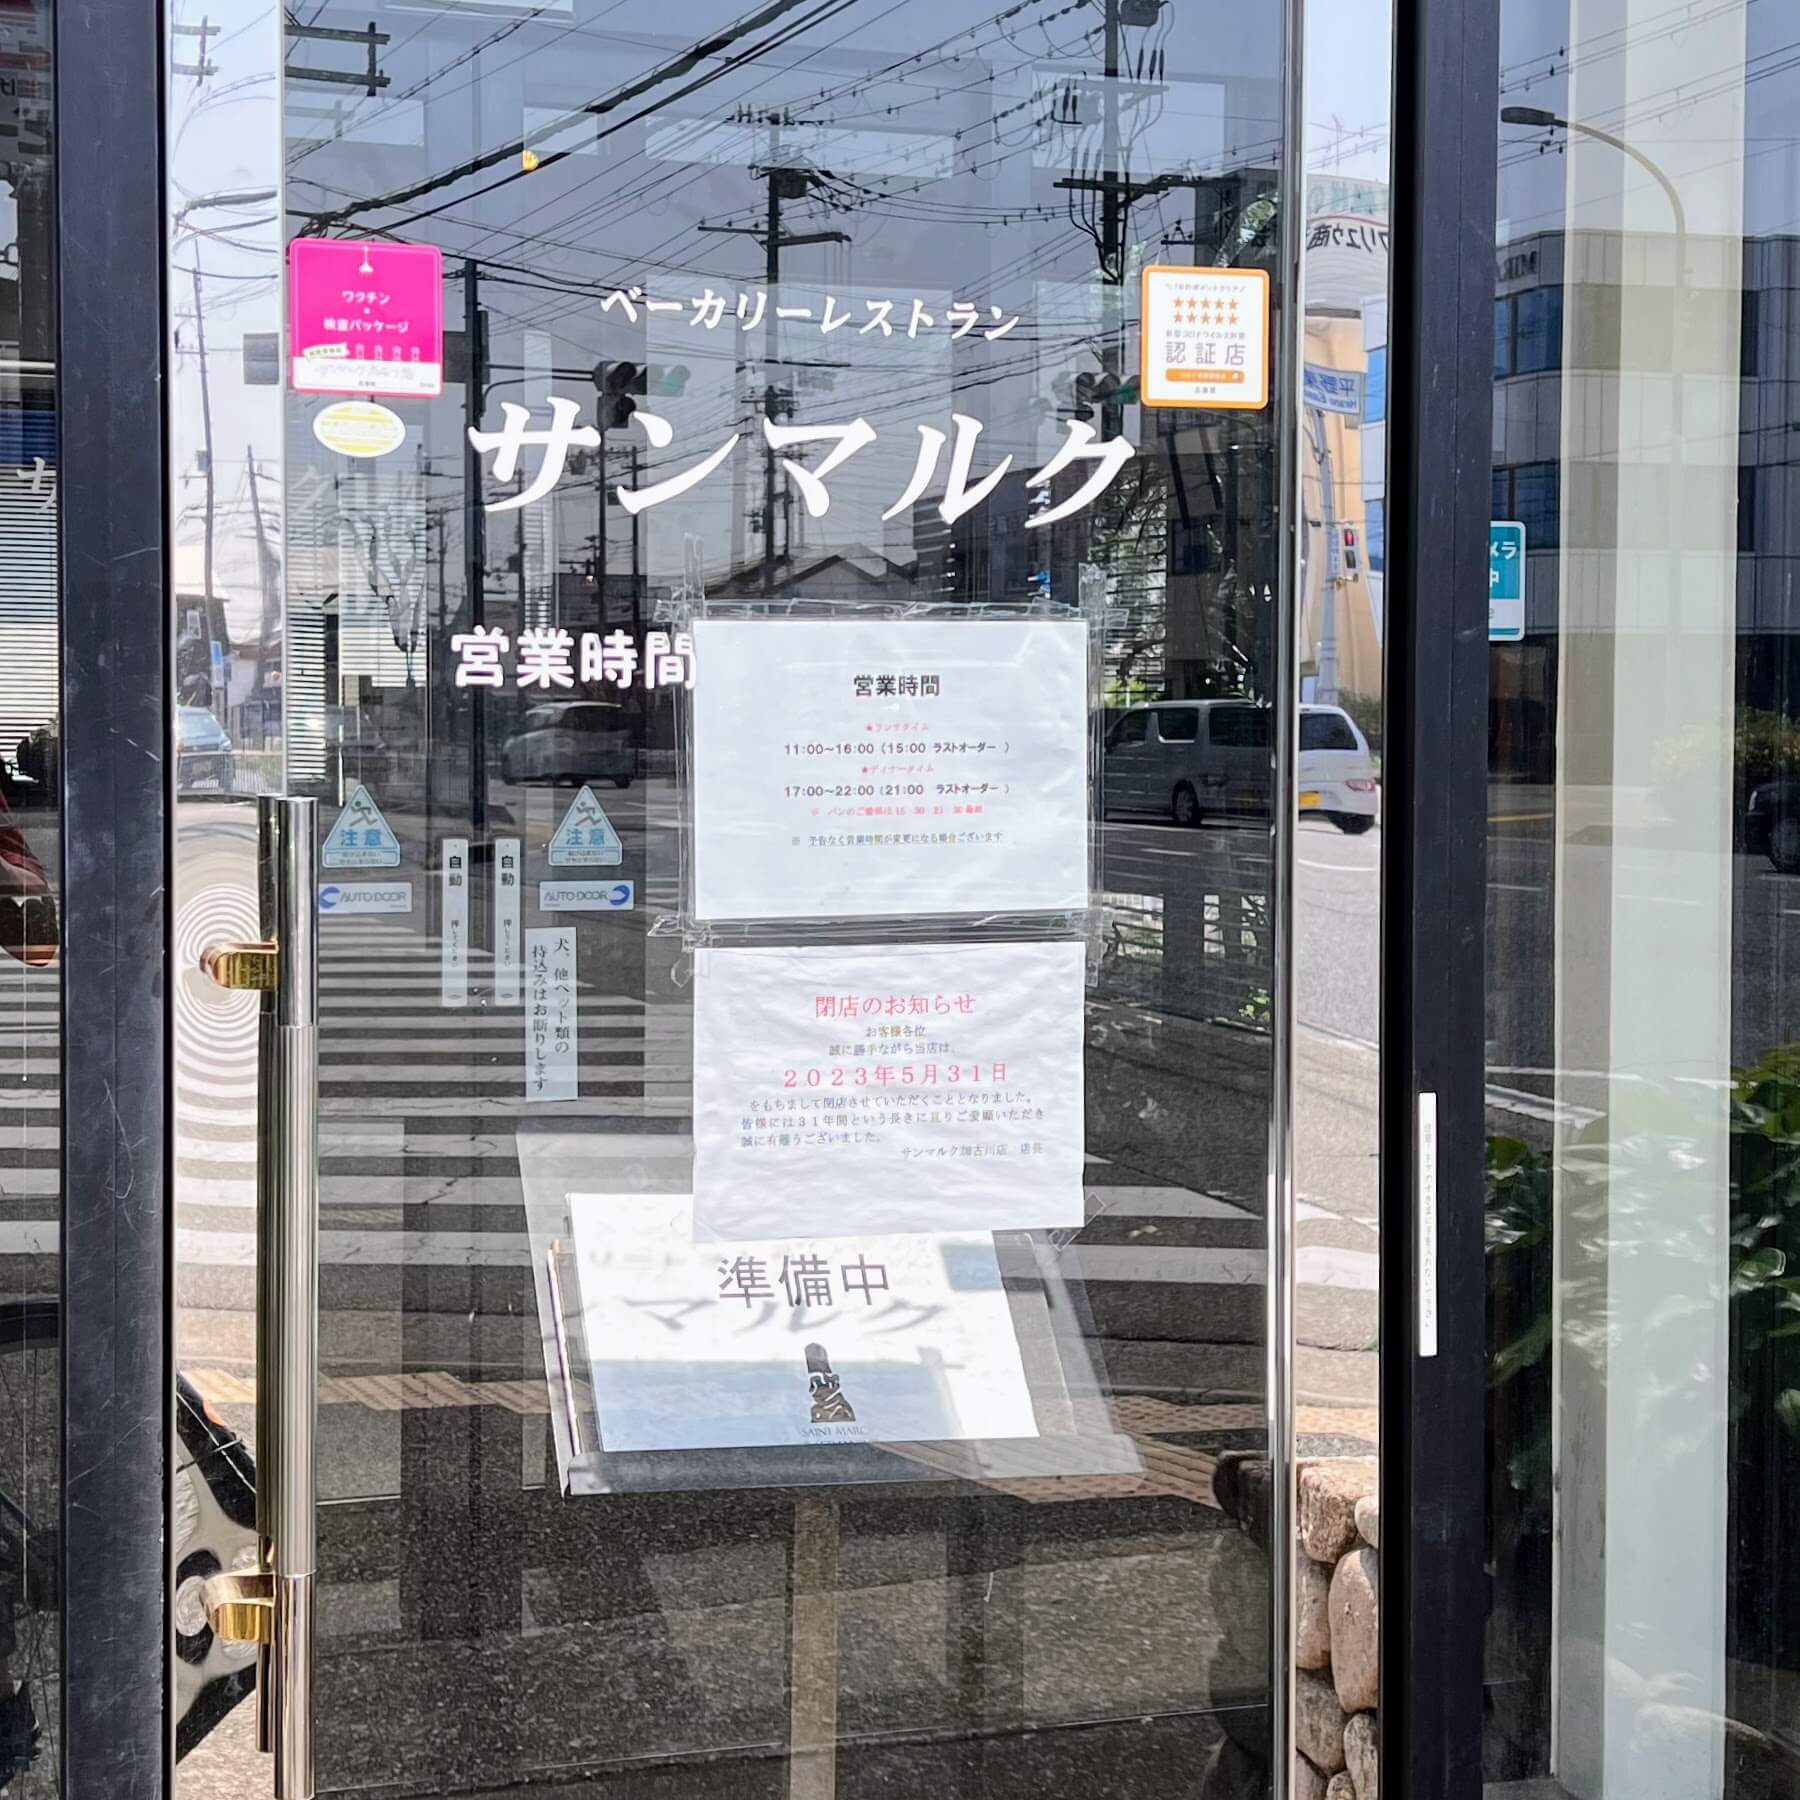 サンマルク加古川店入口の閉店のお知らせ